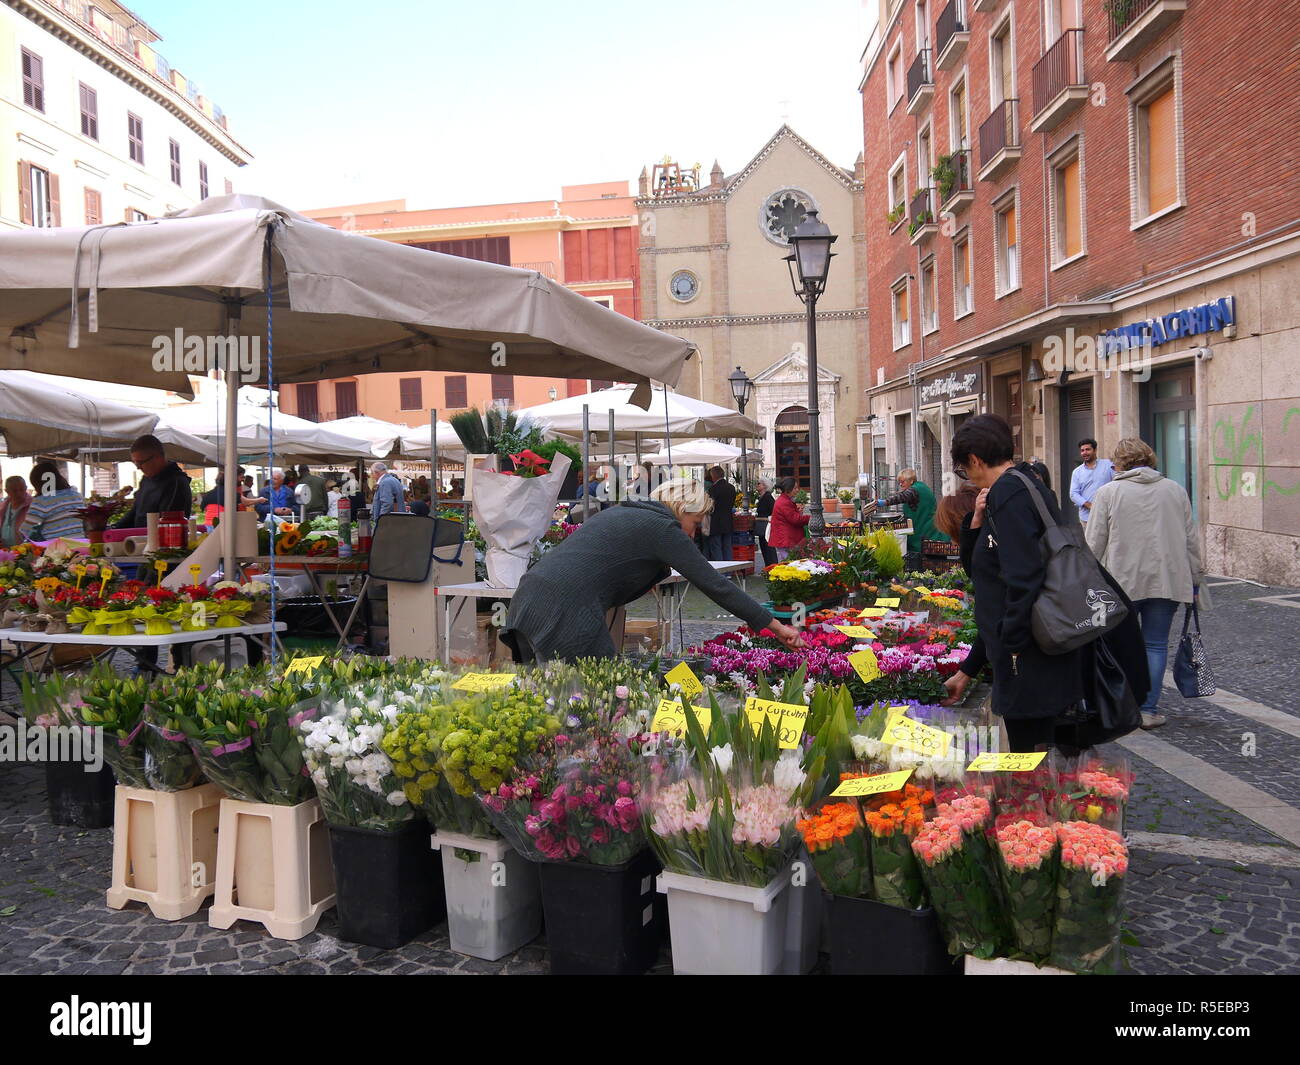 TIVOLI, Italia - 29 de septiembre de 2017: Fresco y hermosas flores, frutas y verduras en el mercado campesino en la plaza principal, la Piazza Plebiscito de ti Foto de stock